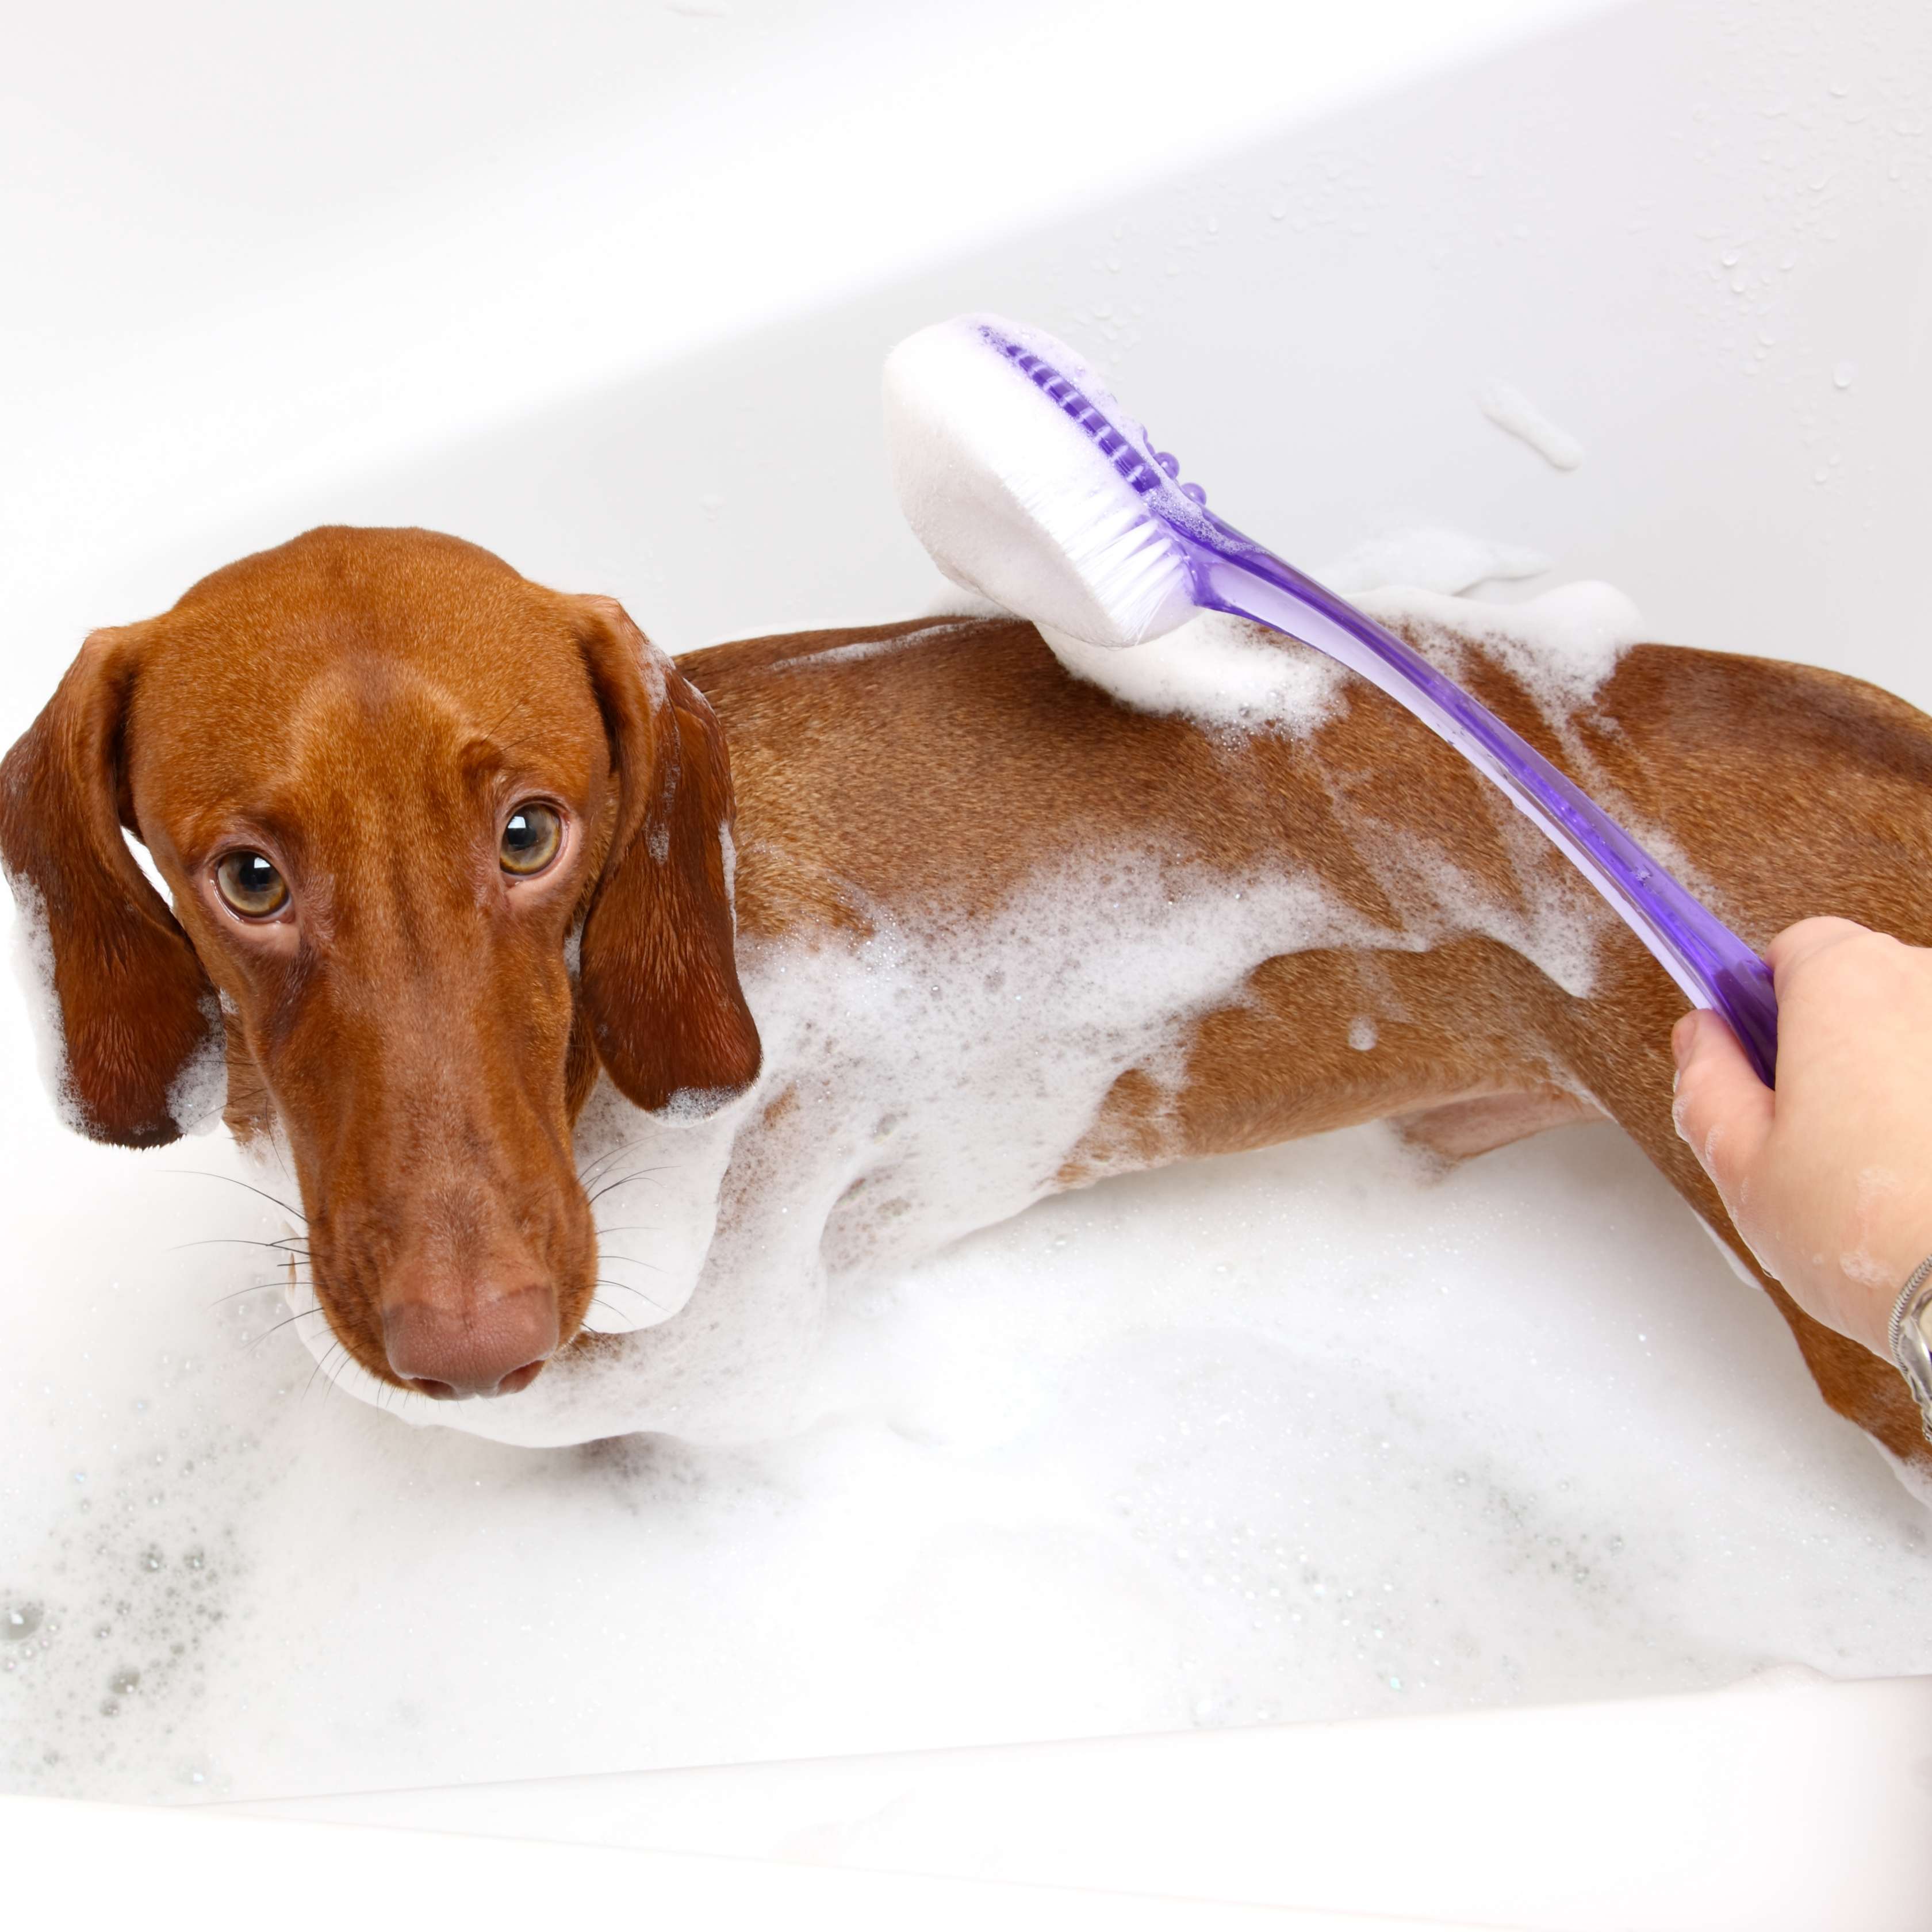 Allianz - Fell pflegen beim Hund: Dackel wird in Badewanne gebürstet